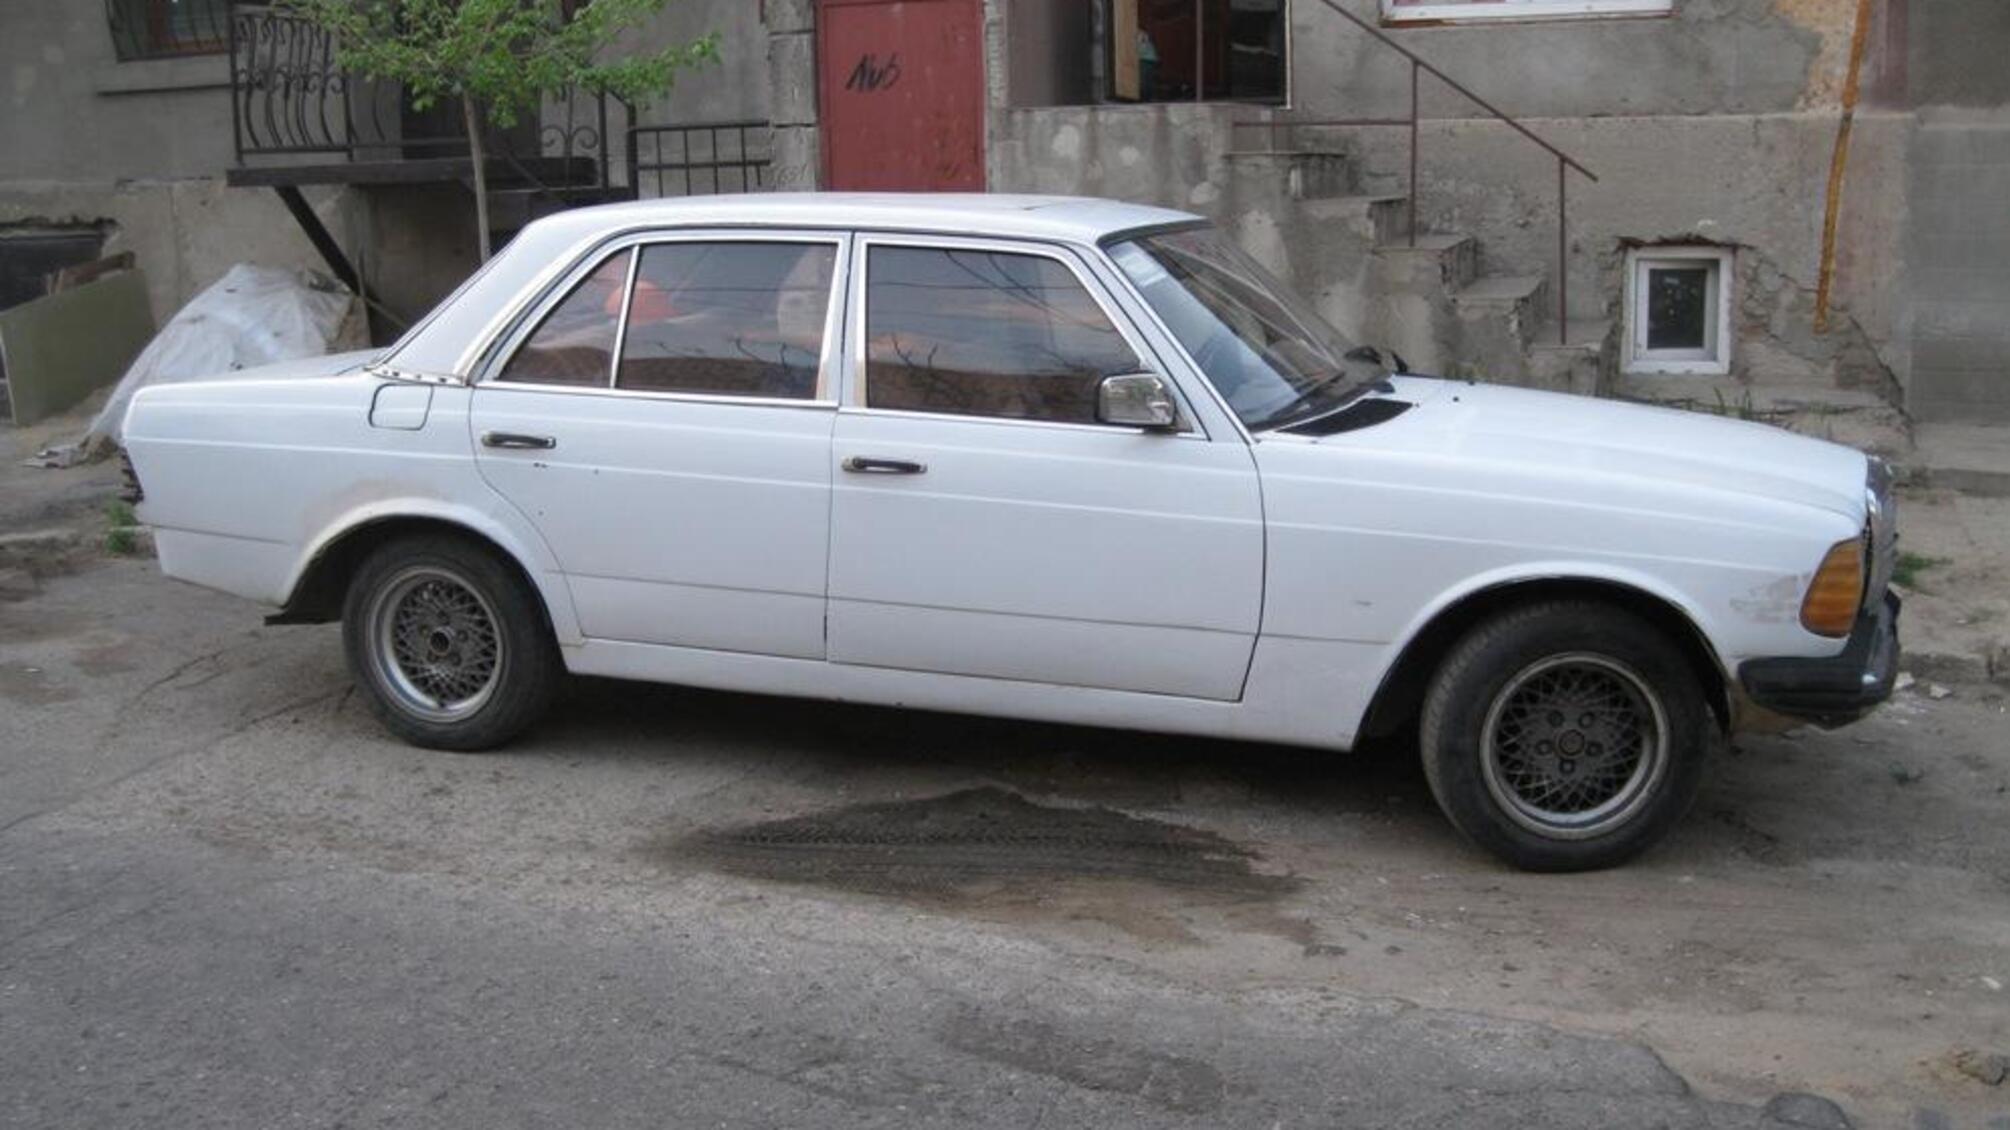 Правоохоронці оперативно затримали підозрюваного у викраденні речей із автомобіля жителя Білгорода-Дністровського